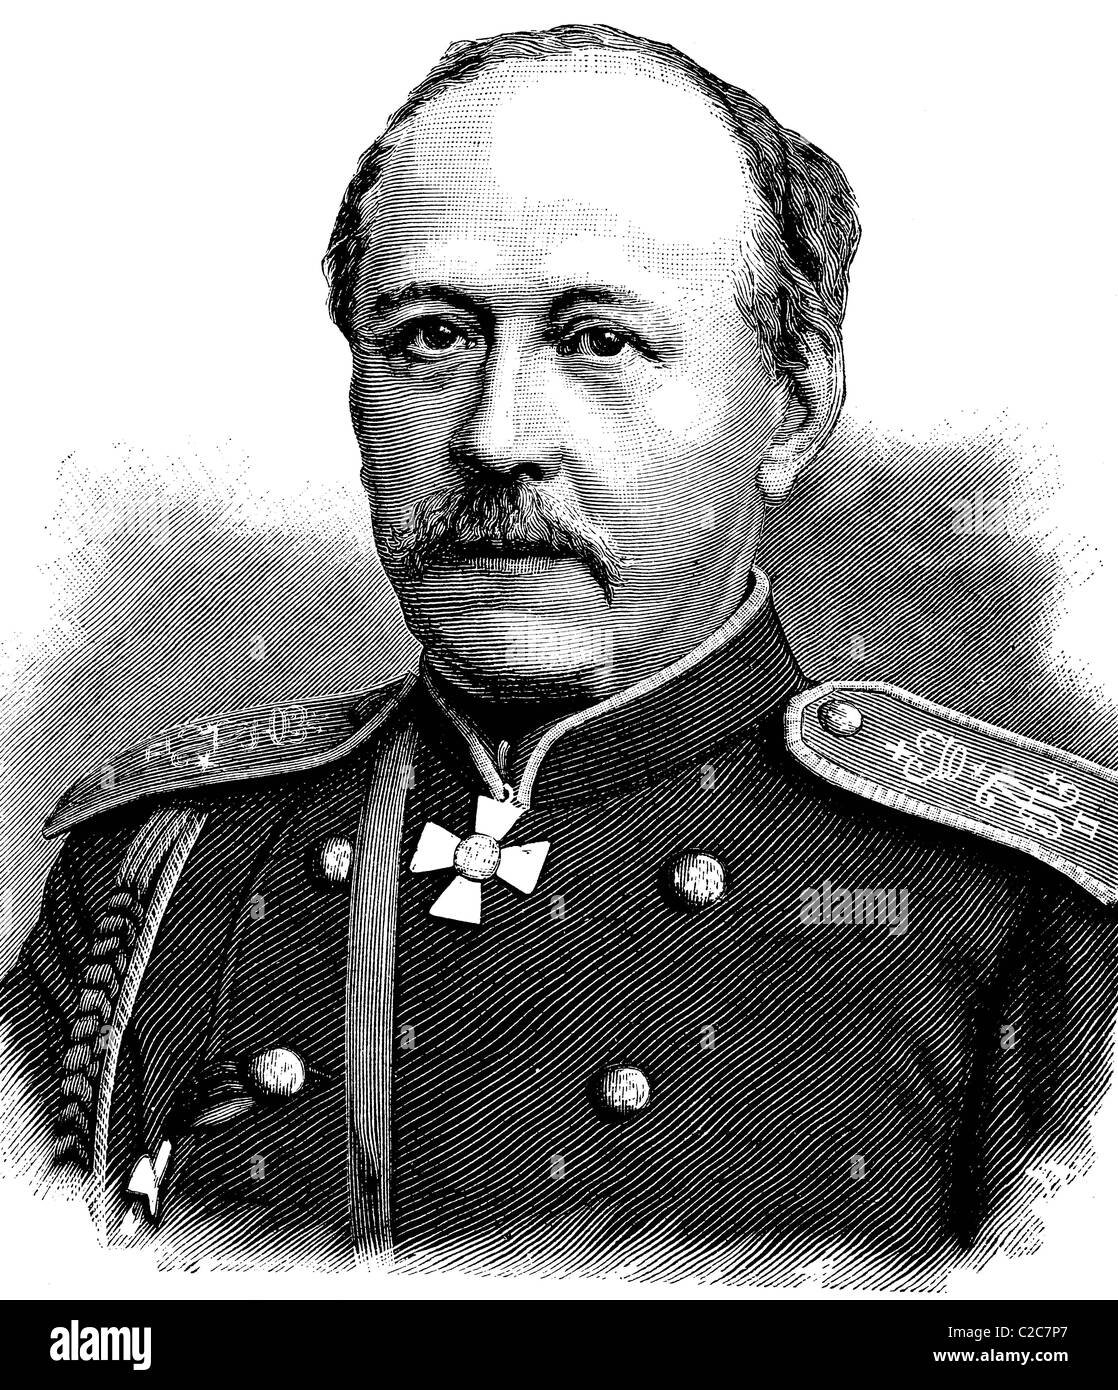 Contar Pablo Andreyevich Shuvalov, 1830-1908, embajador ruso en Berlín, ilustración histórica, circa 1886 Foto de stock